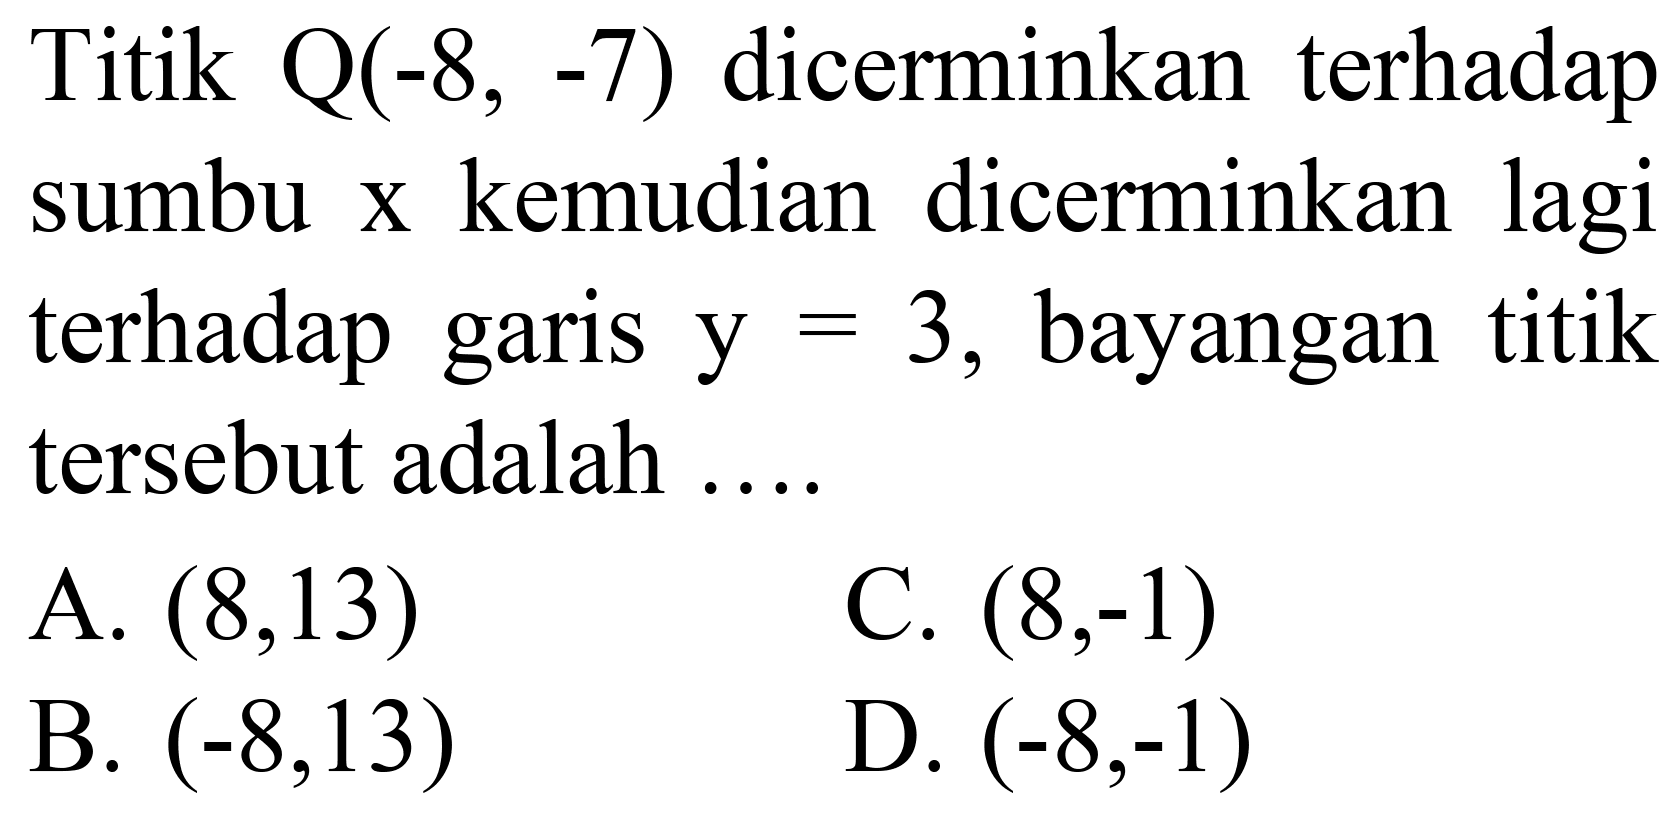 Titik  Q(-8,-7)  dicerminkan terhadap sumbu  x  kemudian dicerminkan lagi terhadap garis  y=3 , bayangan titik tersebut adalah ....
A.  (8,13) 
C.  (8,-1) 
B.  (-8,13) 
D.  (-8,-1) 